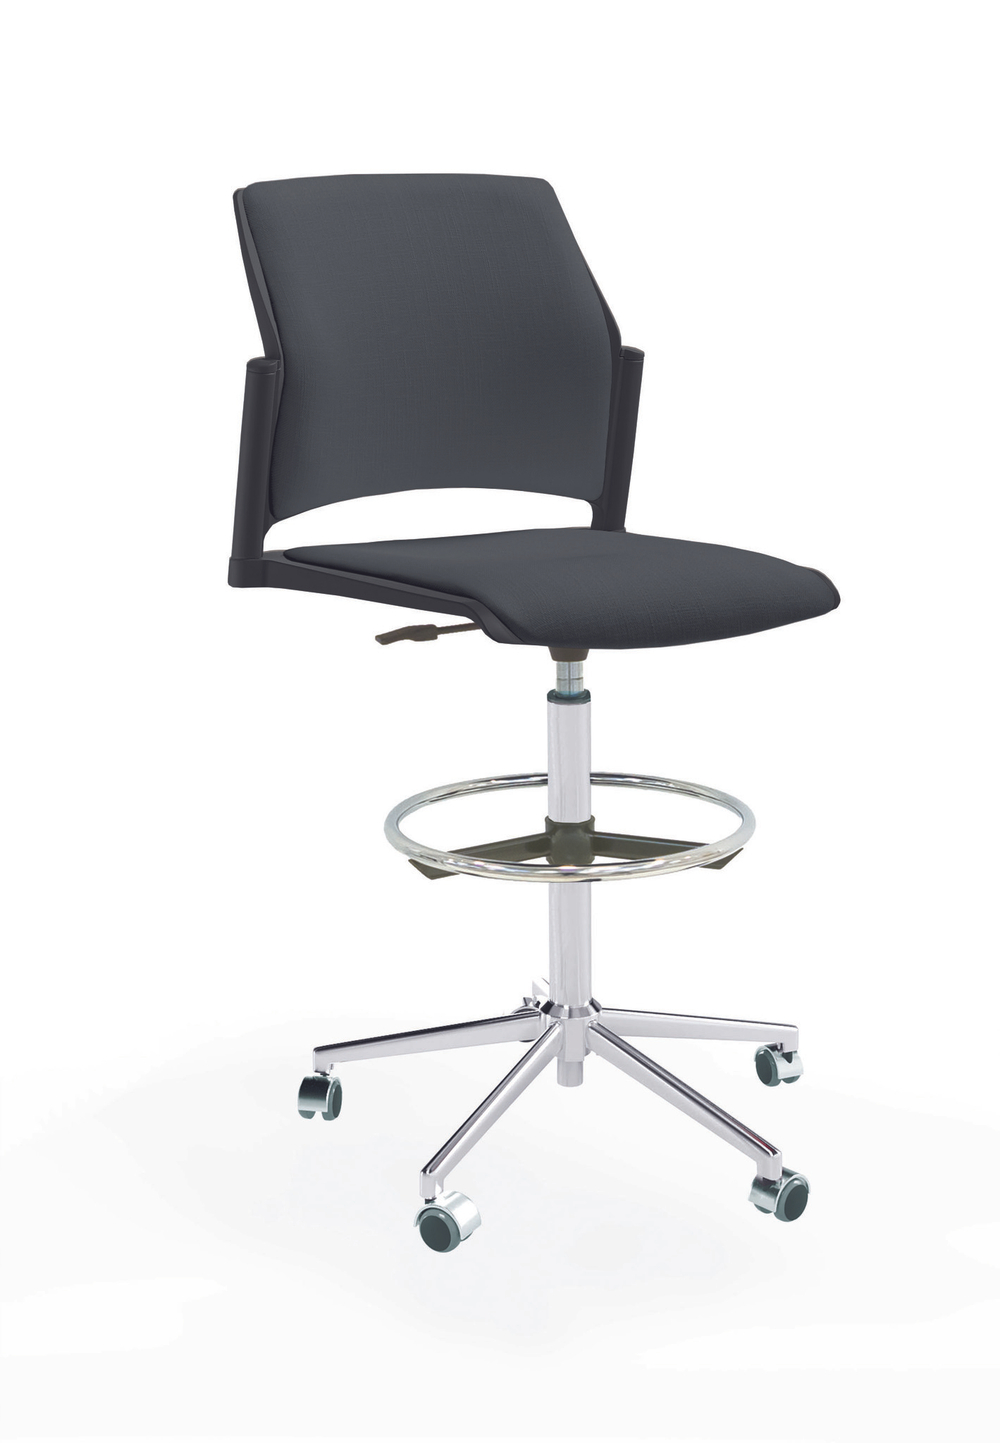 Кресло Rewind каркас хром, пластик черный, база стальная хромированная, без подлокотников, сиденье и спинка антрацит